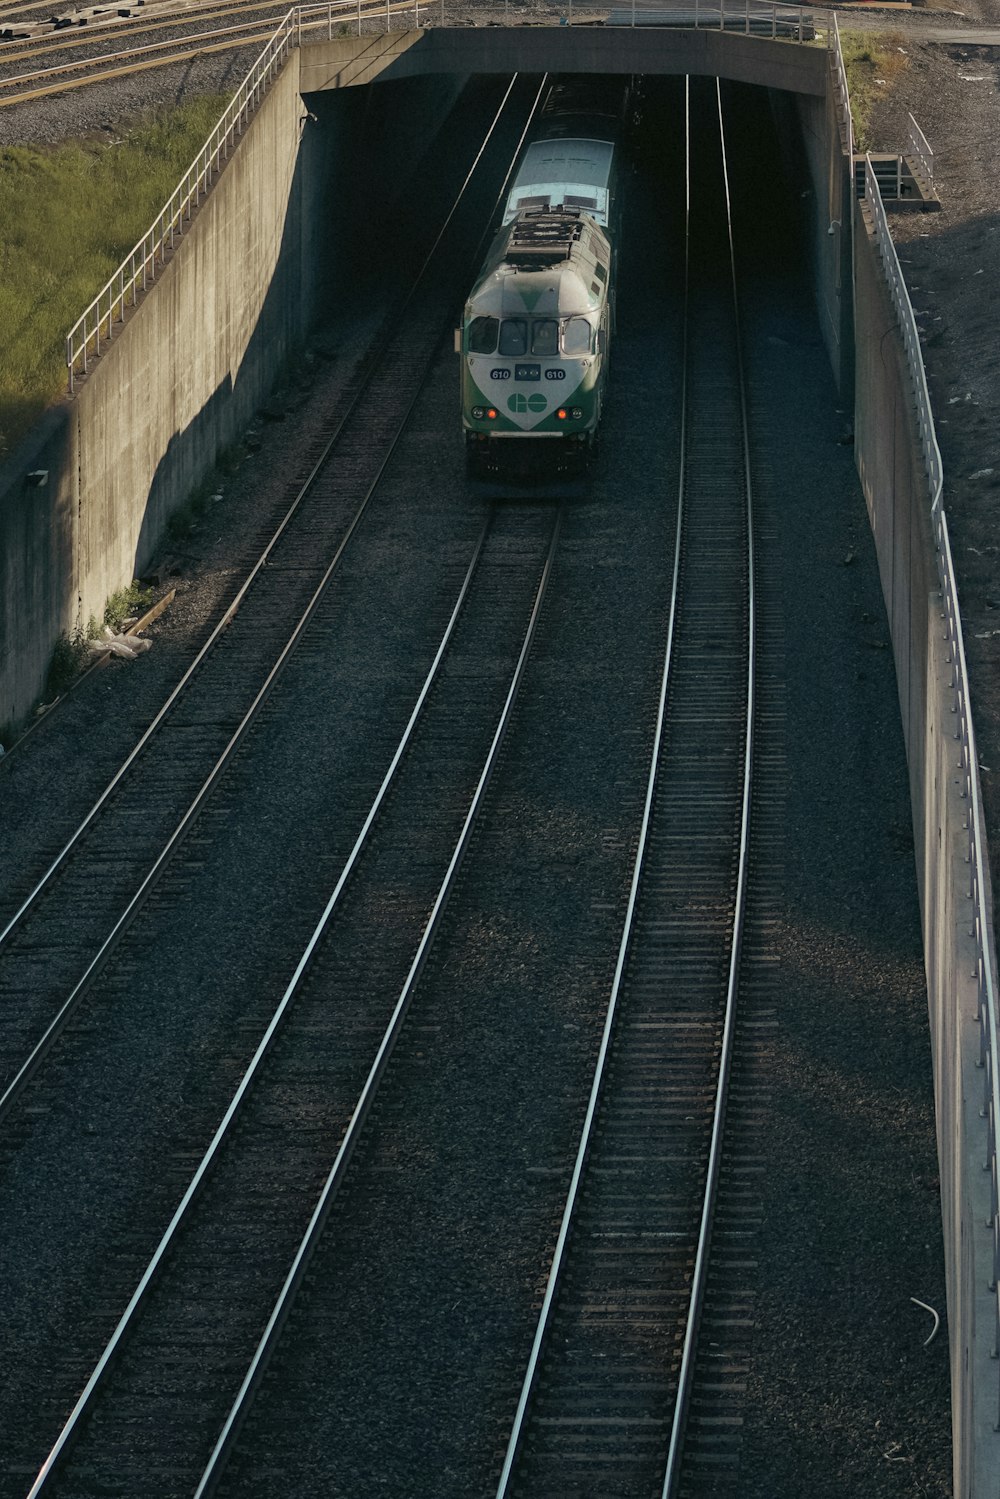 a train going through a tunnel